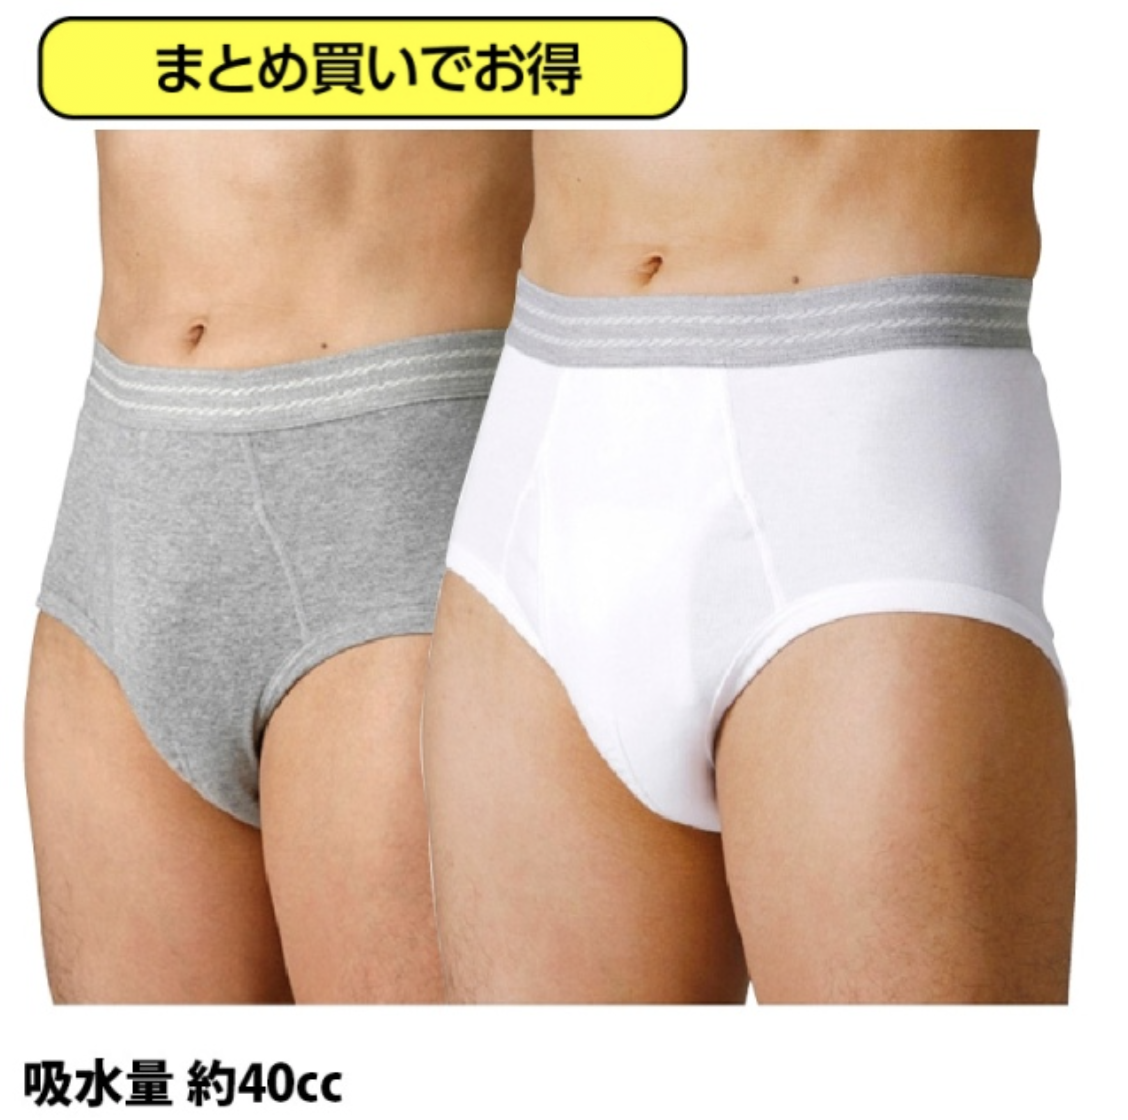 【WDまとめ買い】軽失禁パンツ ウェルドライ 男性用ブリーフ(吸水量40cc)